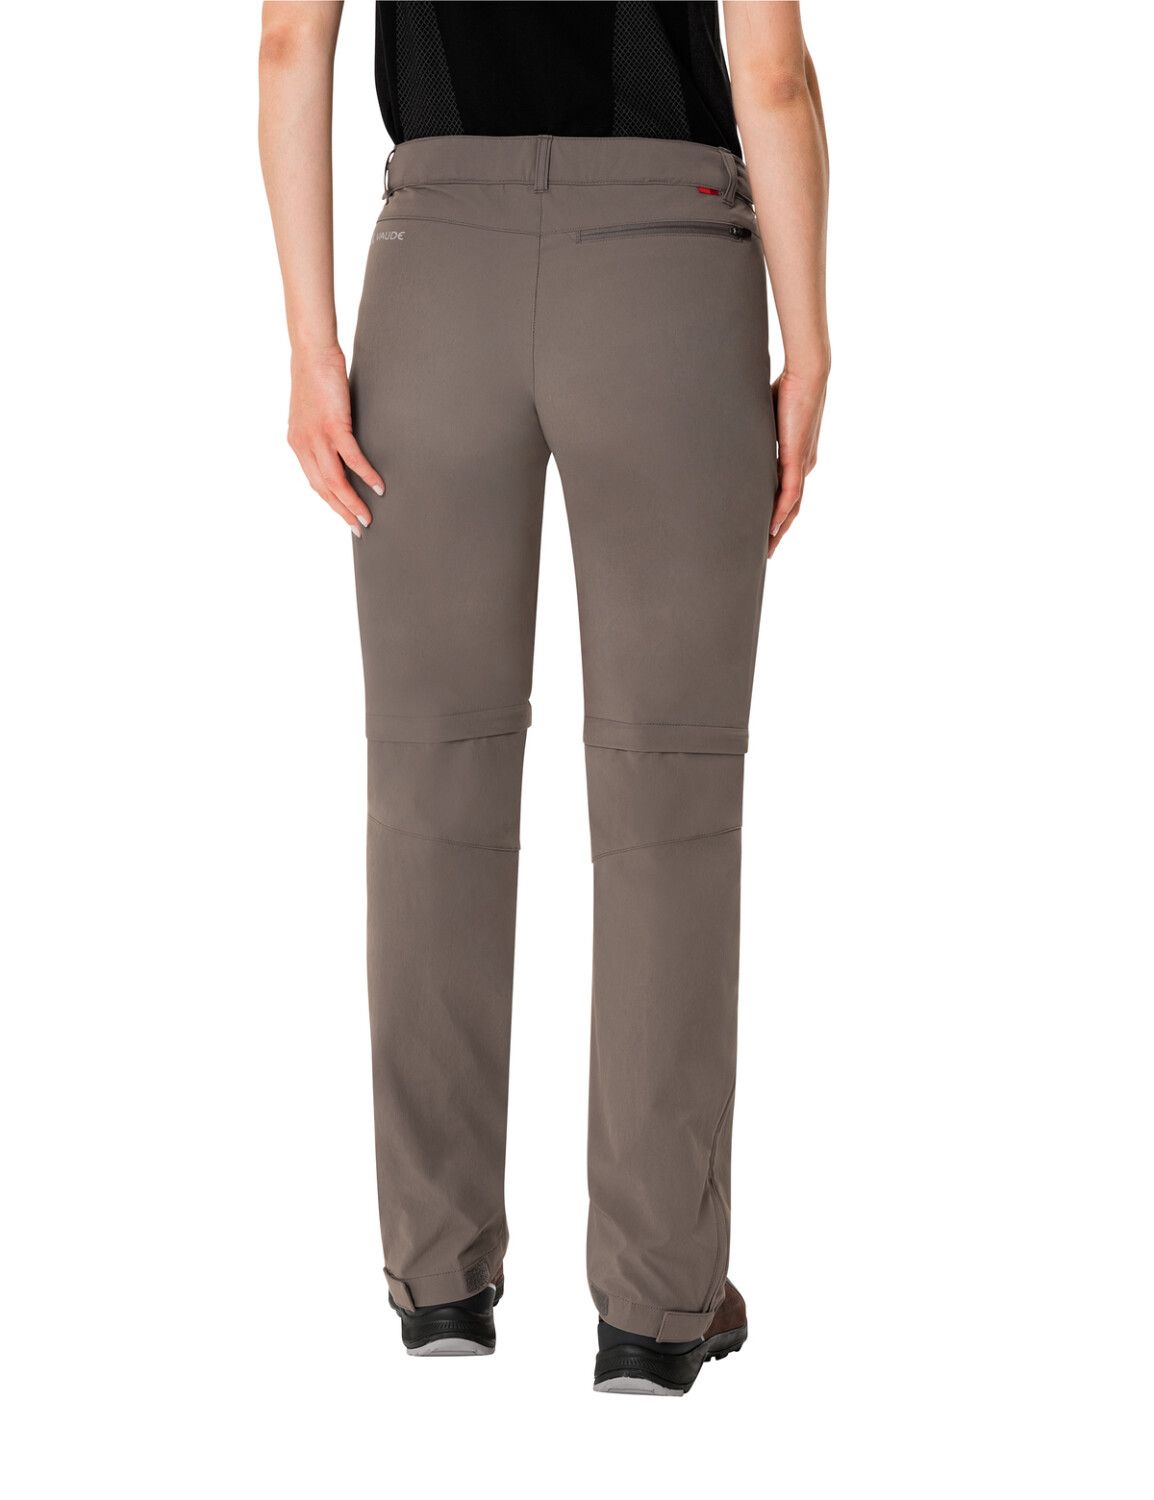 VAUDE Women's Farley Stretch ZO T-Zip Pants (Bild 34)